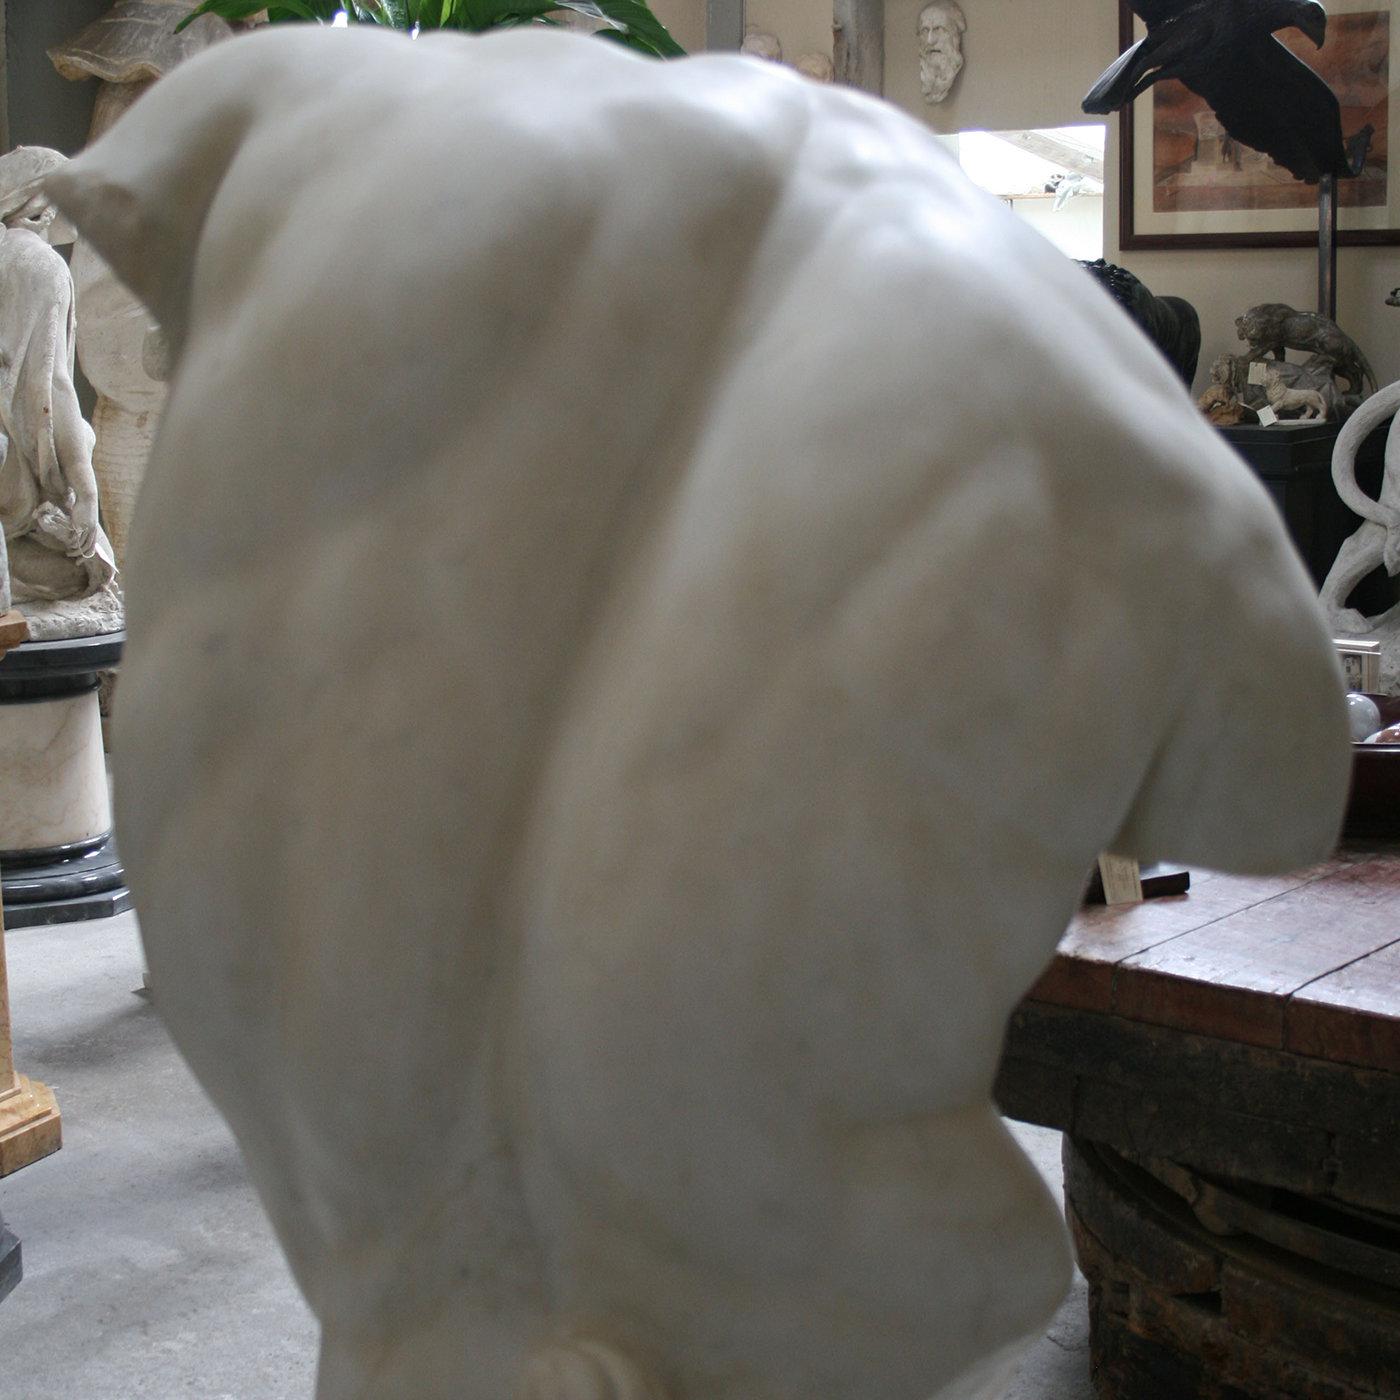 Sculpture en marbre blanc précieux de Carrare reproduisant le Torso Gaddi, la célèbre sculpture fragmentaire exposée dans les Musées des Offices à Florence, qui a inspiré de nombreux grands artistes de la Renaissance, dont Michelangelo. Comme à la